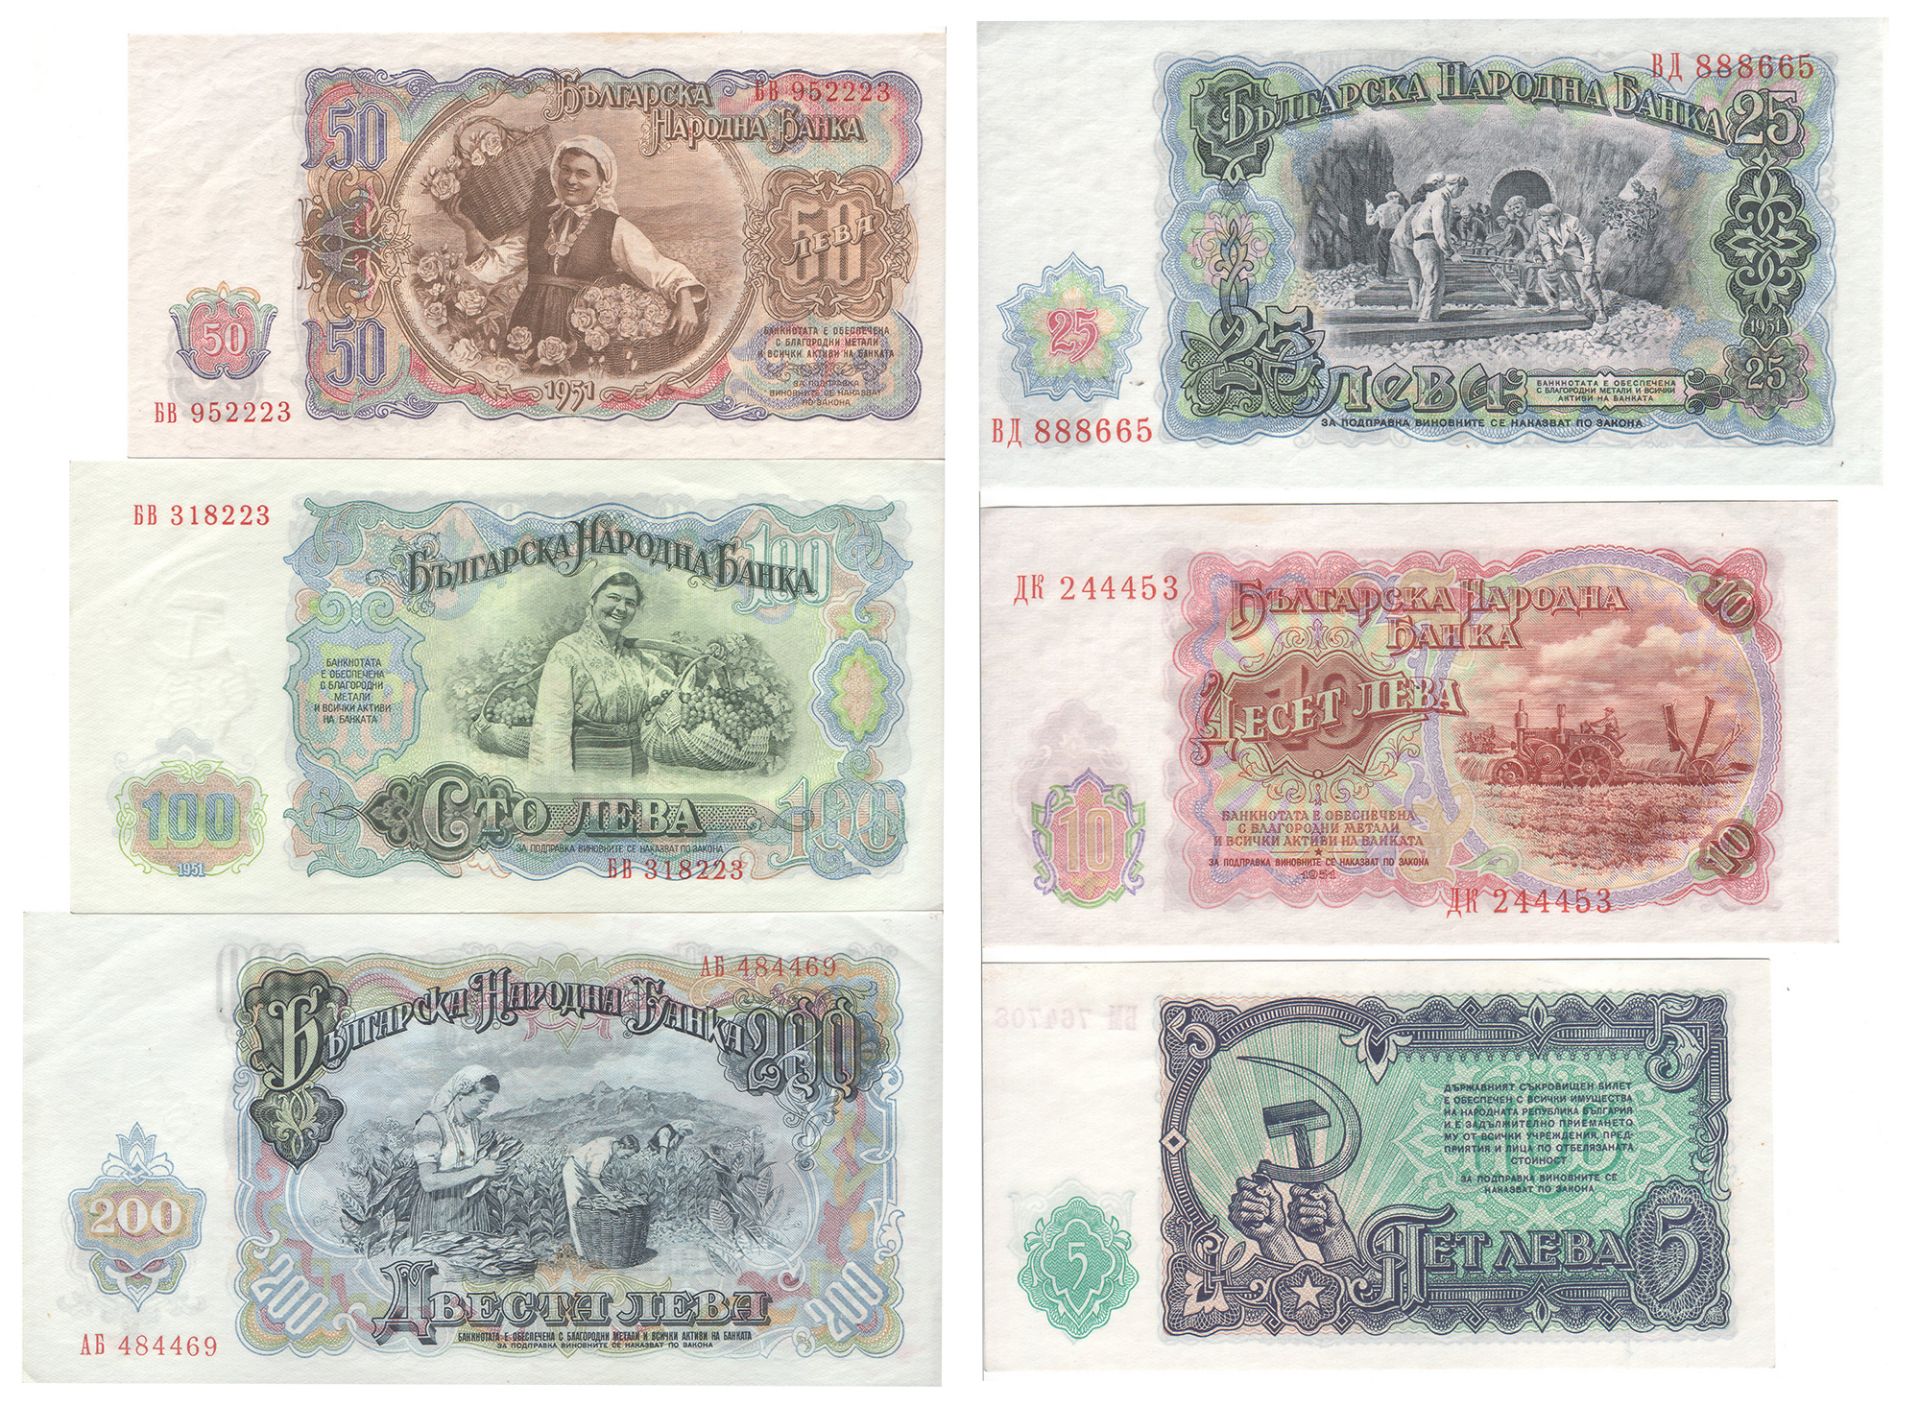 Bulgarien 1951, 5-, 10-, 25-, 50-, 100- und 200 Lewa Banknoten. Erhaltung: vz. - Bild 2 aus 2